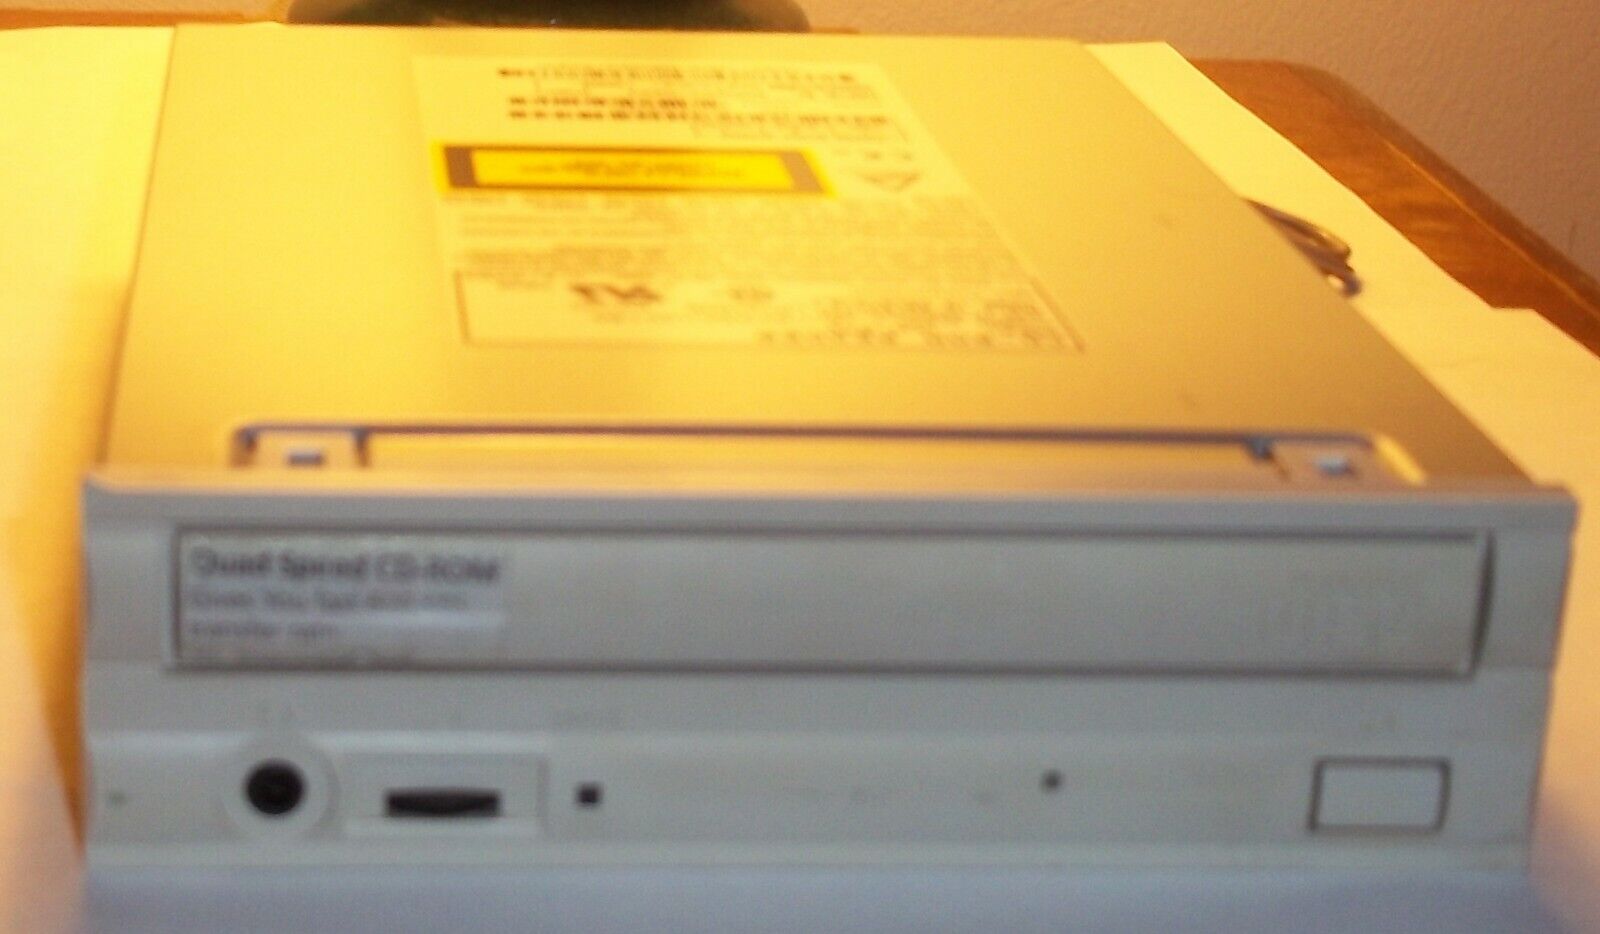 Laser CD Drive Reader NEC Corp  CD Rom Reader CDR 273